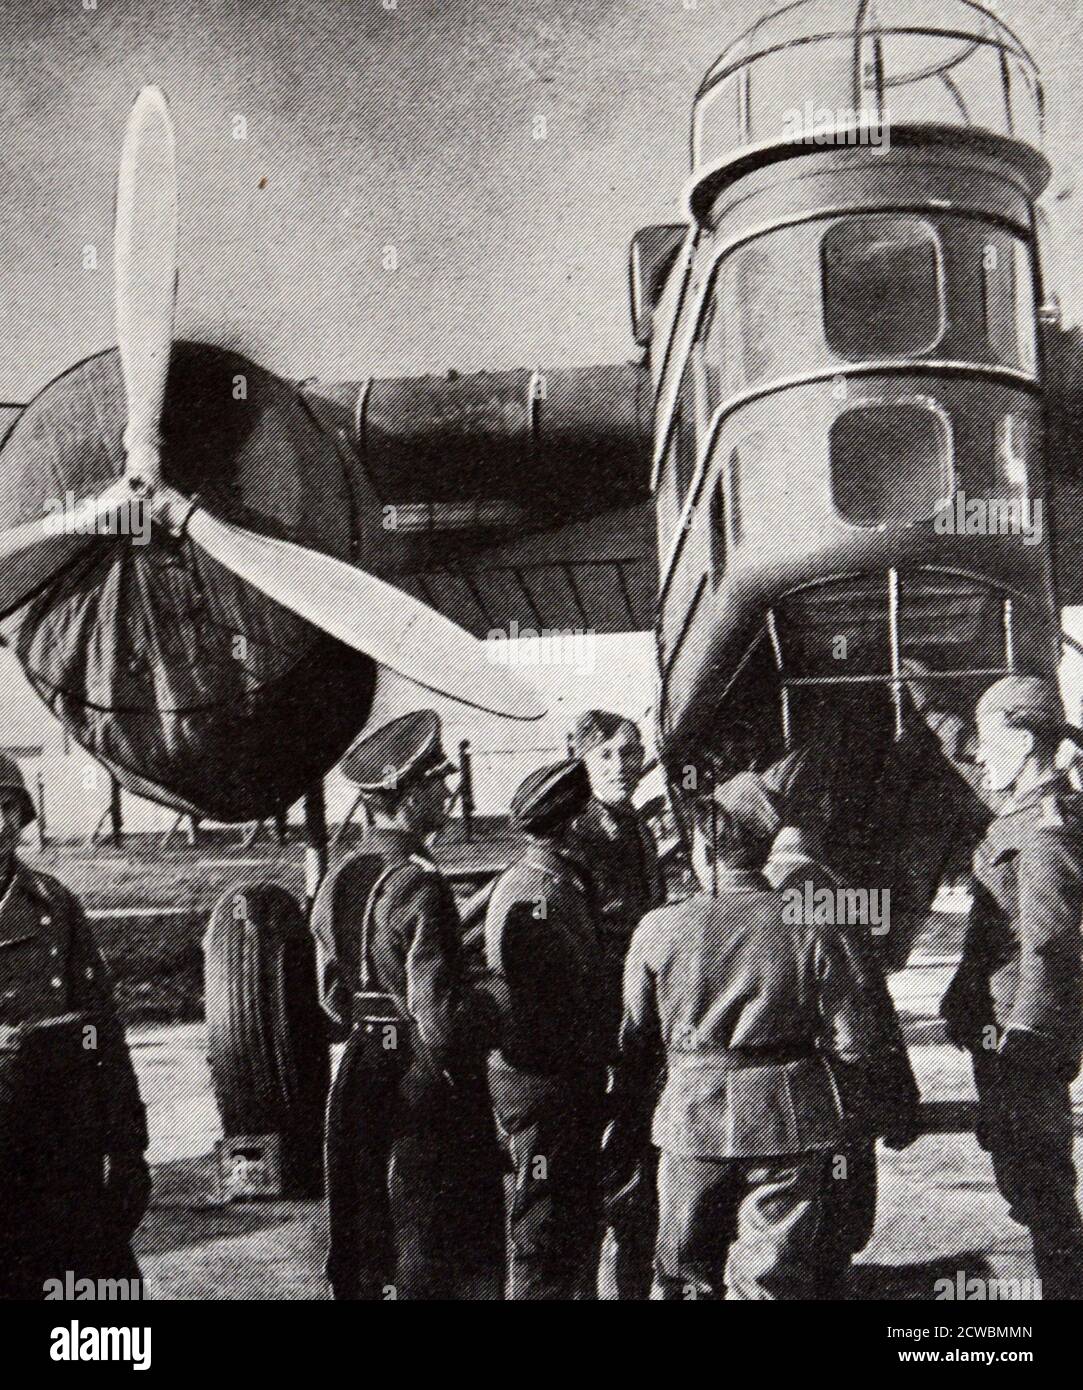 Schwarz-Weiß-Fotografie der tschechischen Militärausrüstung, die den Deutschen übergeben wurde. Stockfoto